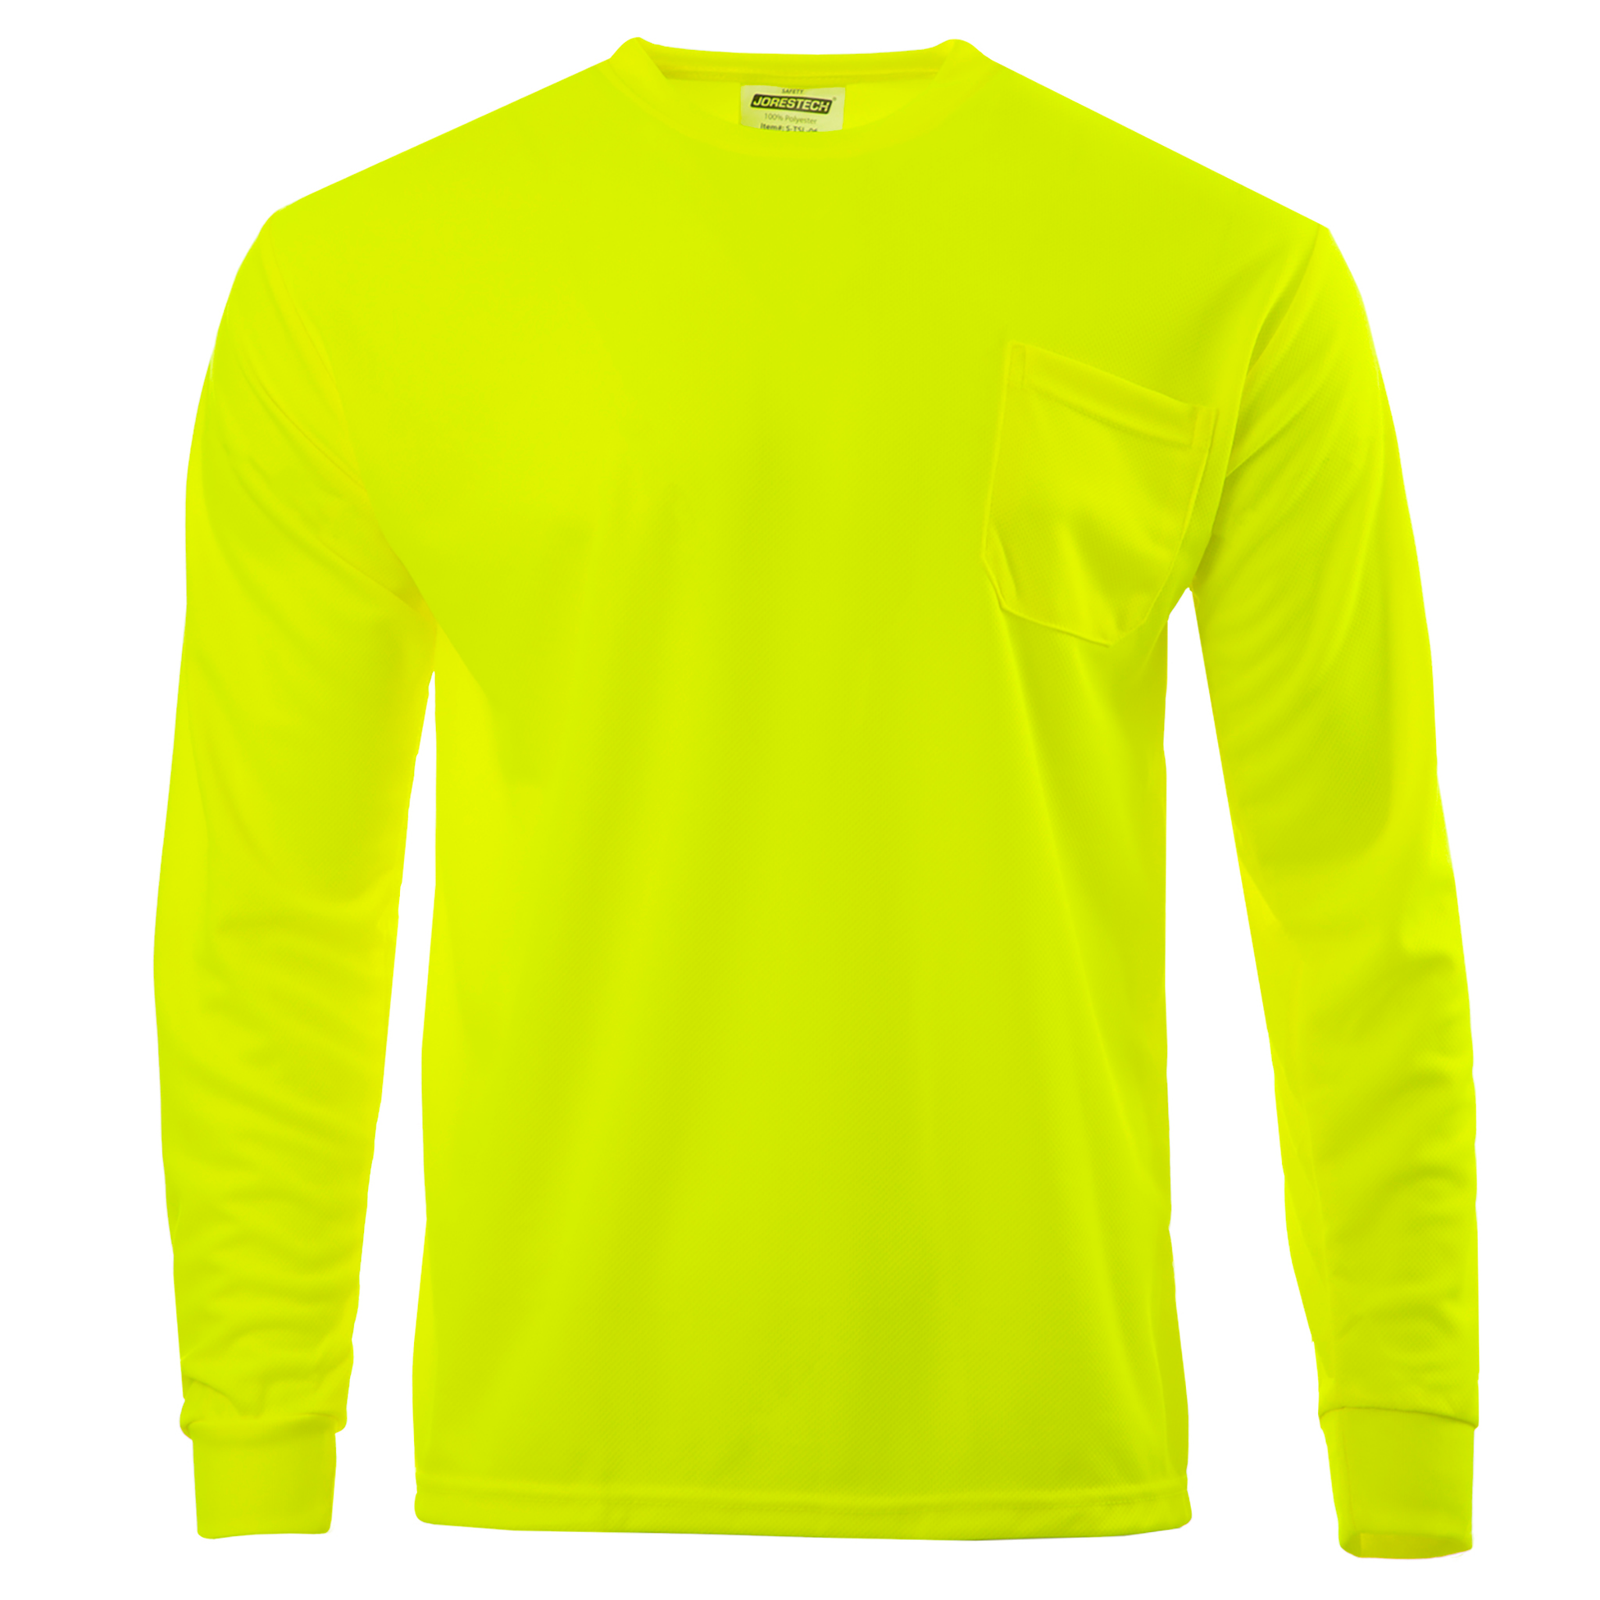 Hi-vis safety long sleeve yellow shirts